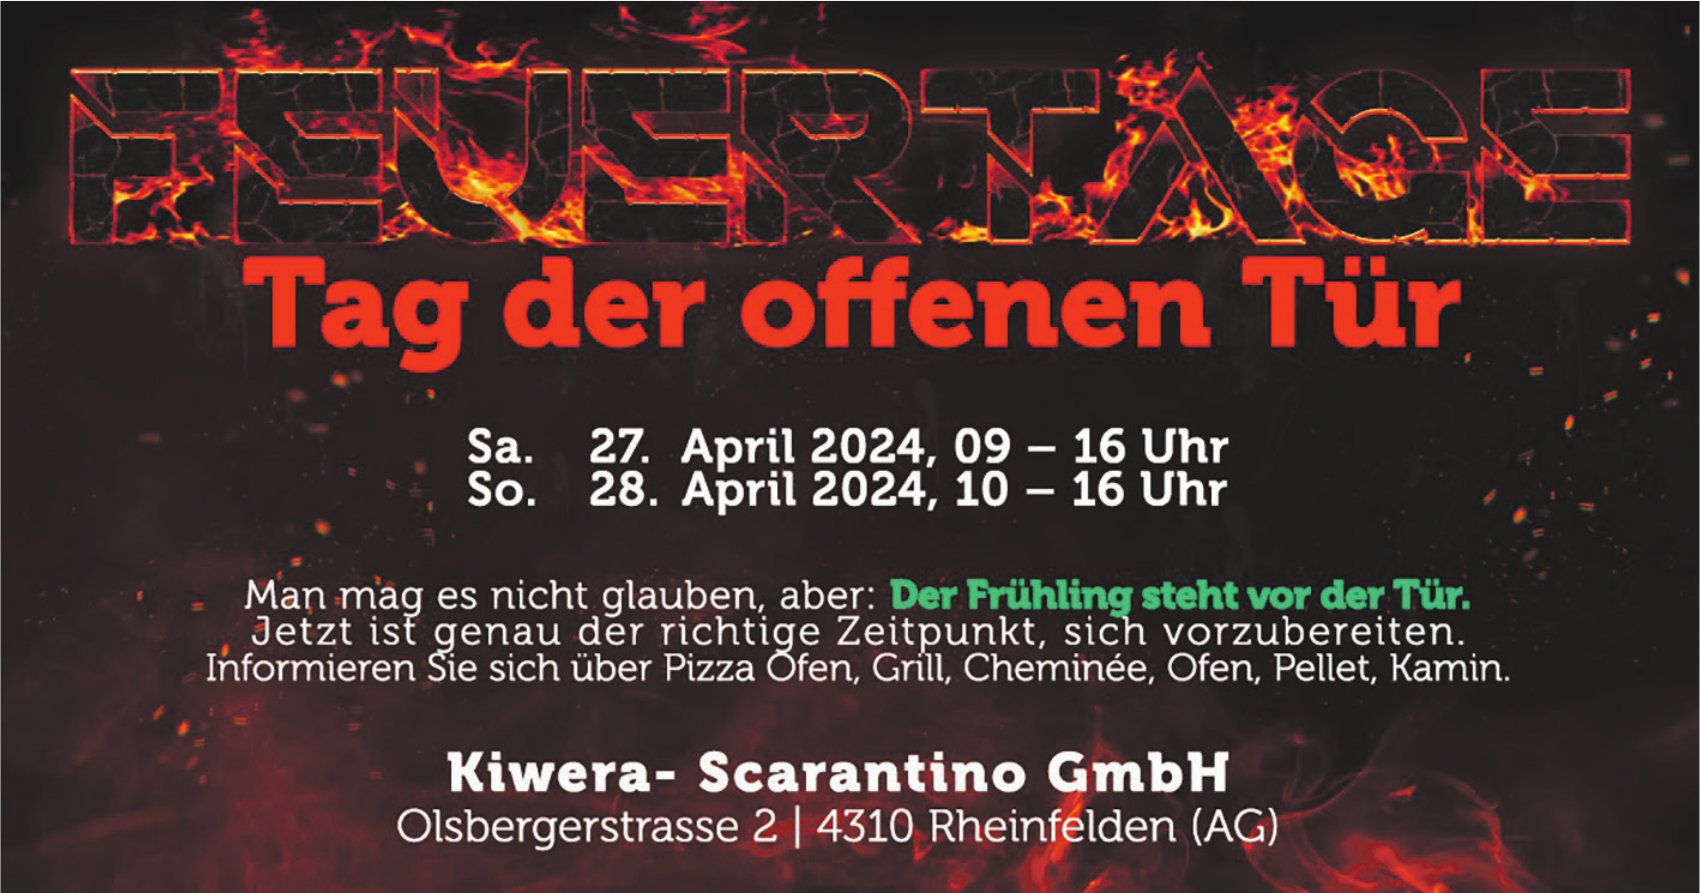 Tag der offenen Tür, 27. und 28. April, Kiwera-Scarantino GmbH, Rheinfelden